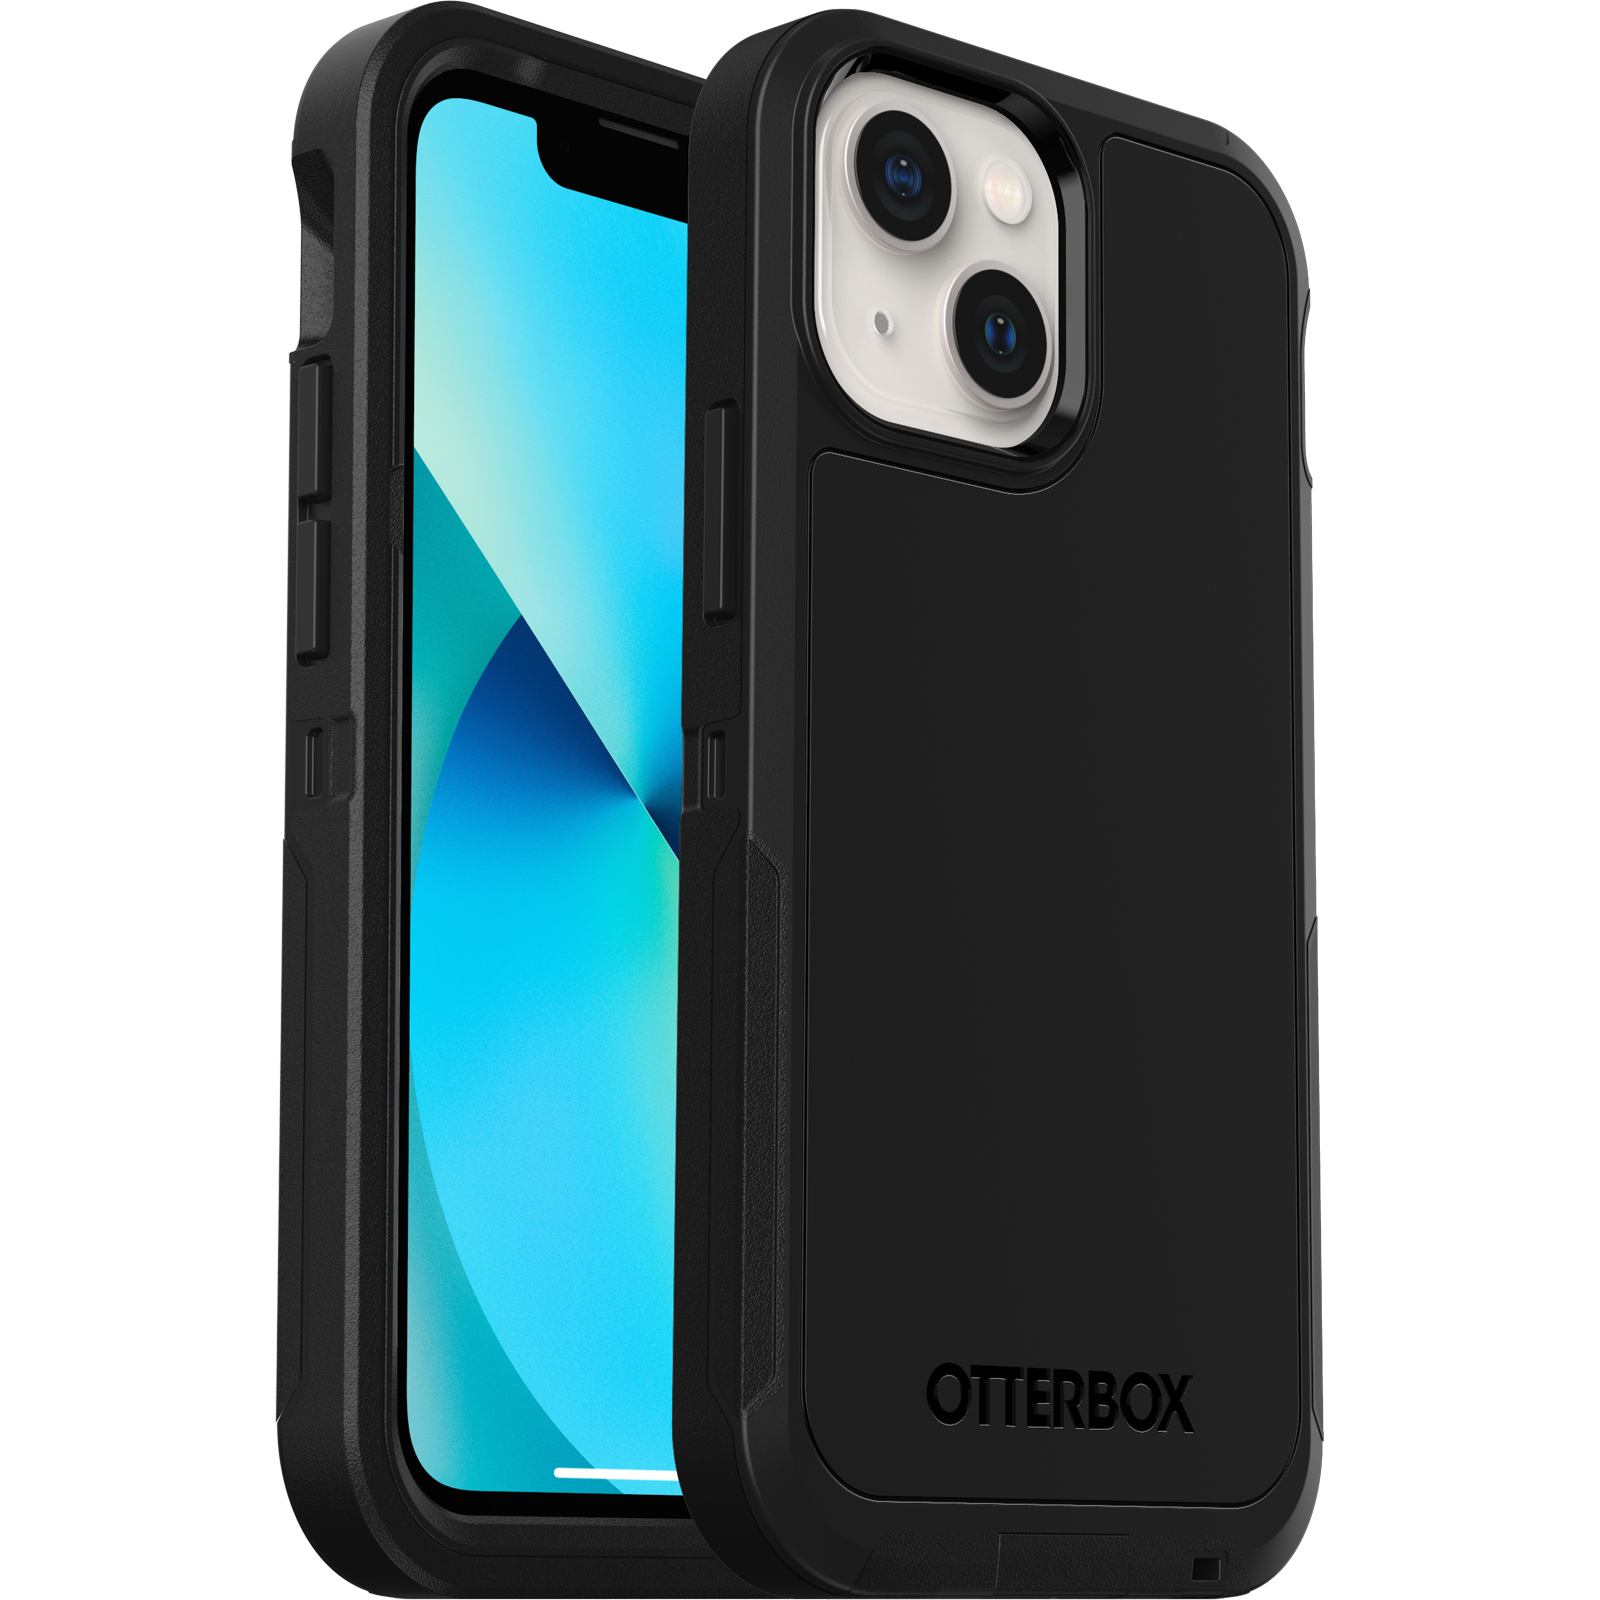 Keine Einzelhandelsverpackung sturzgeschützte Schutzhülle OtterBox für Apple iPhone 13 mini / iPhone 12 mini Transparent Sleek Case Schlanke